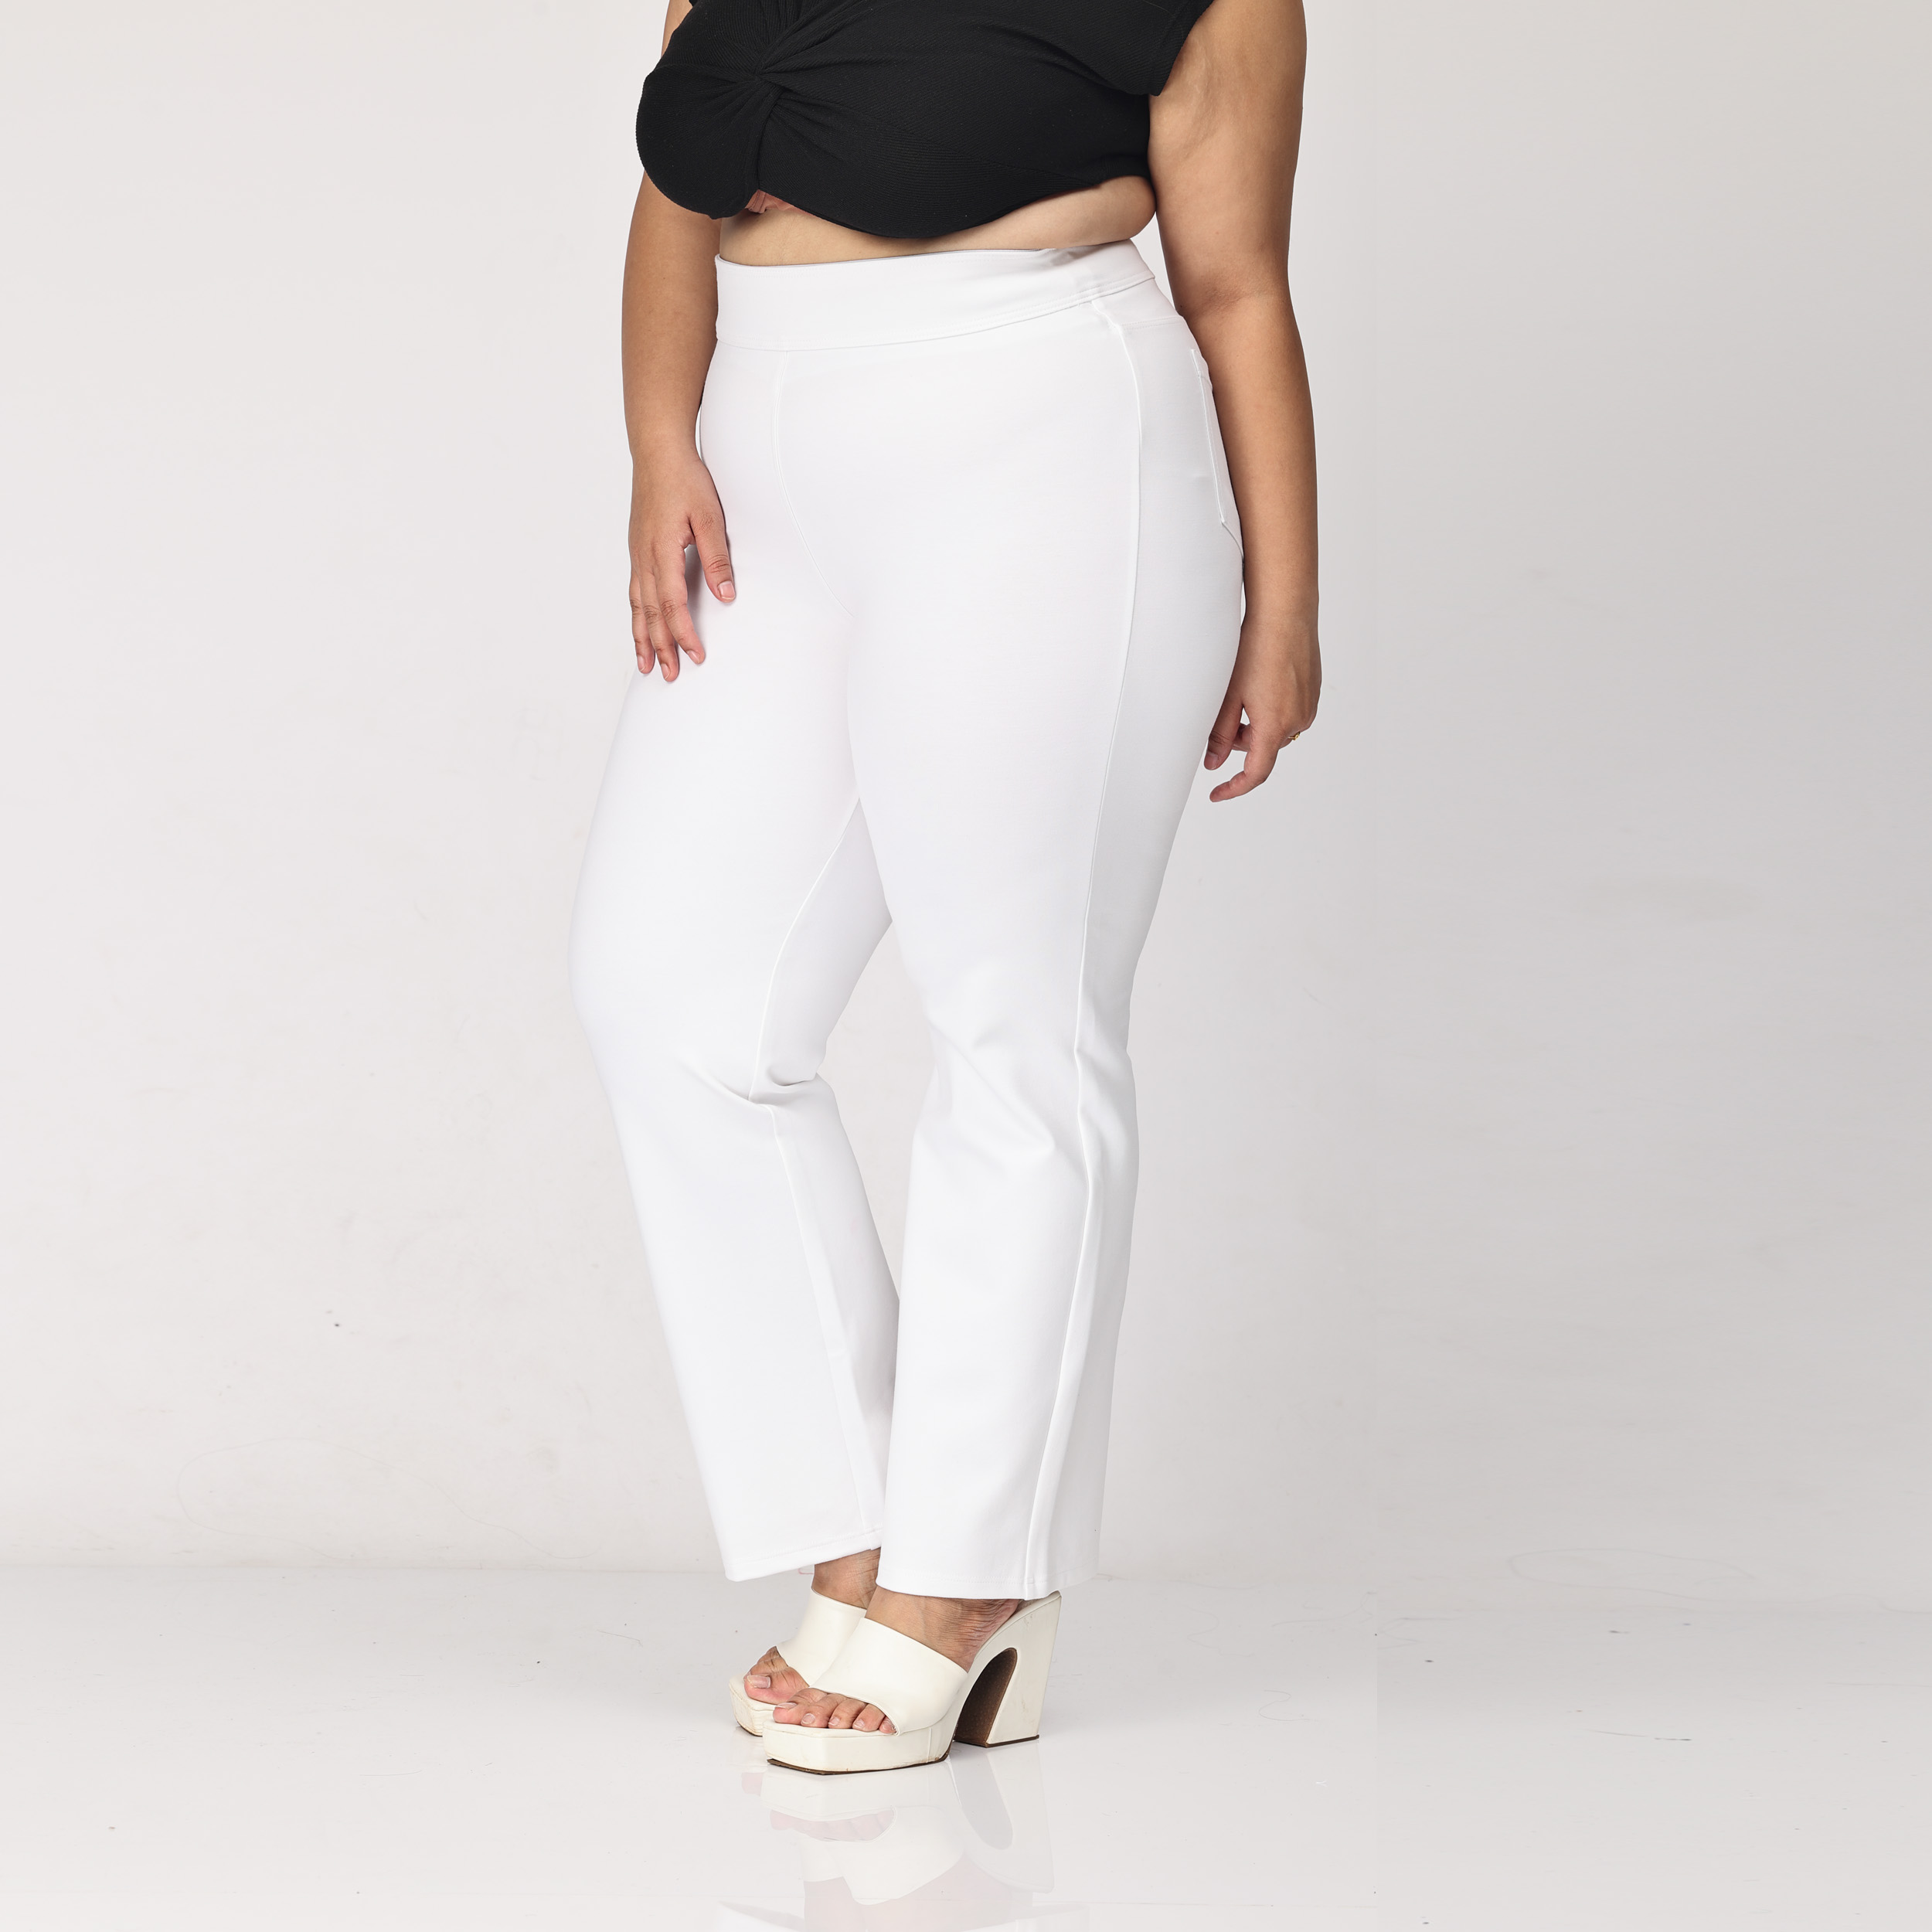 White plus size flare bootcut pants & trousers for women xxxxl to xxxxxl.